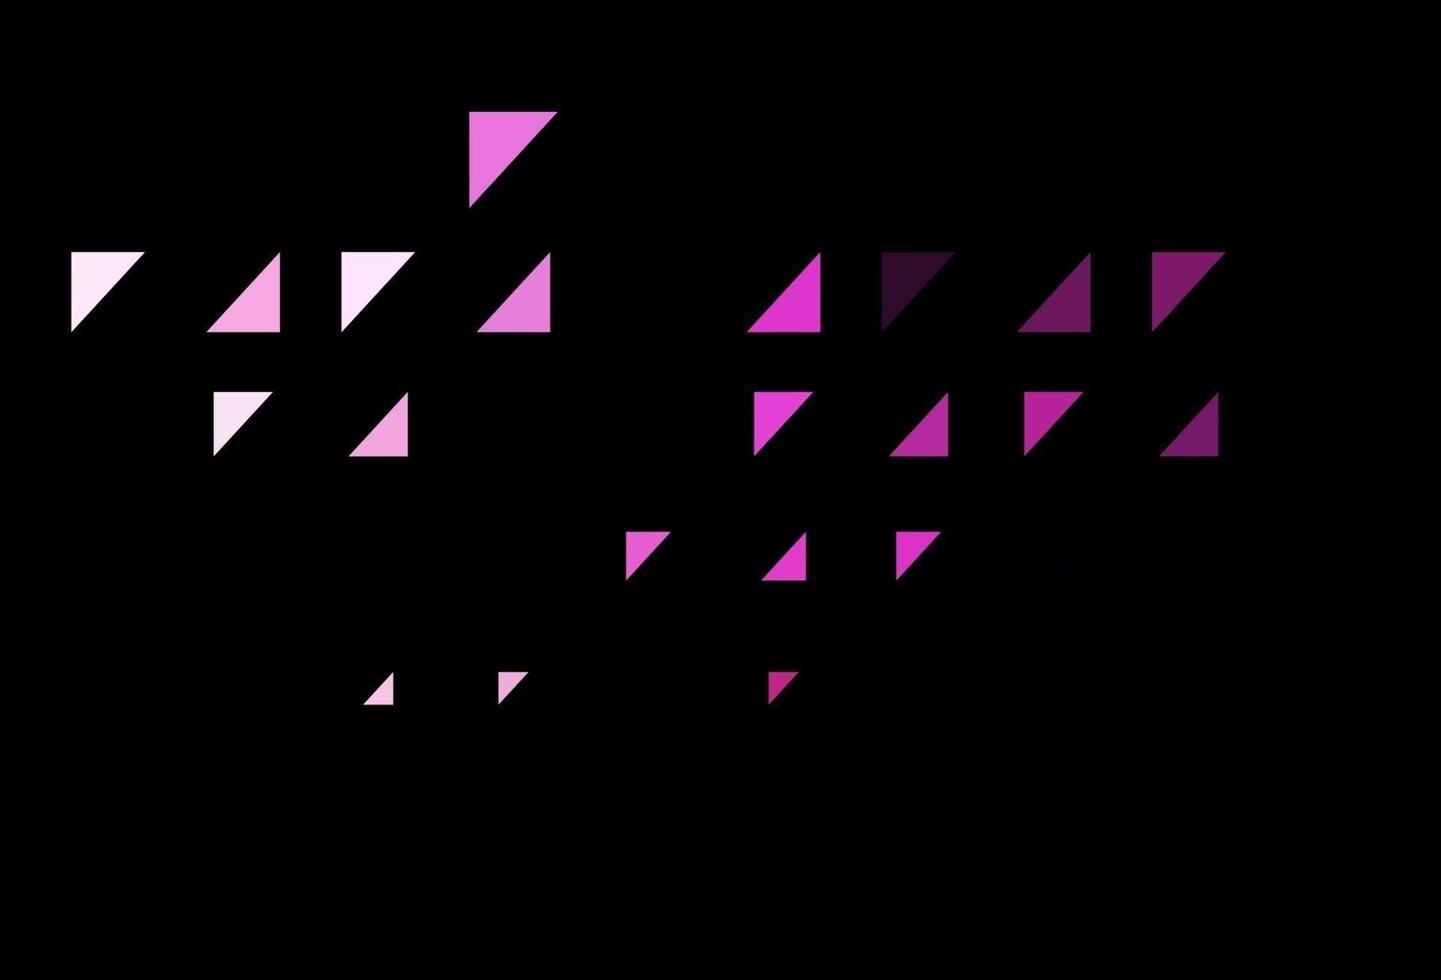 Telón de fondo de vector rosa oscuro con puntos.